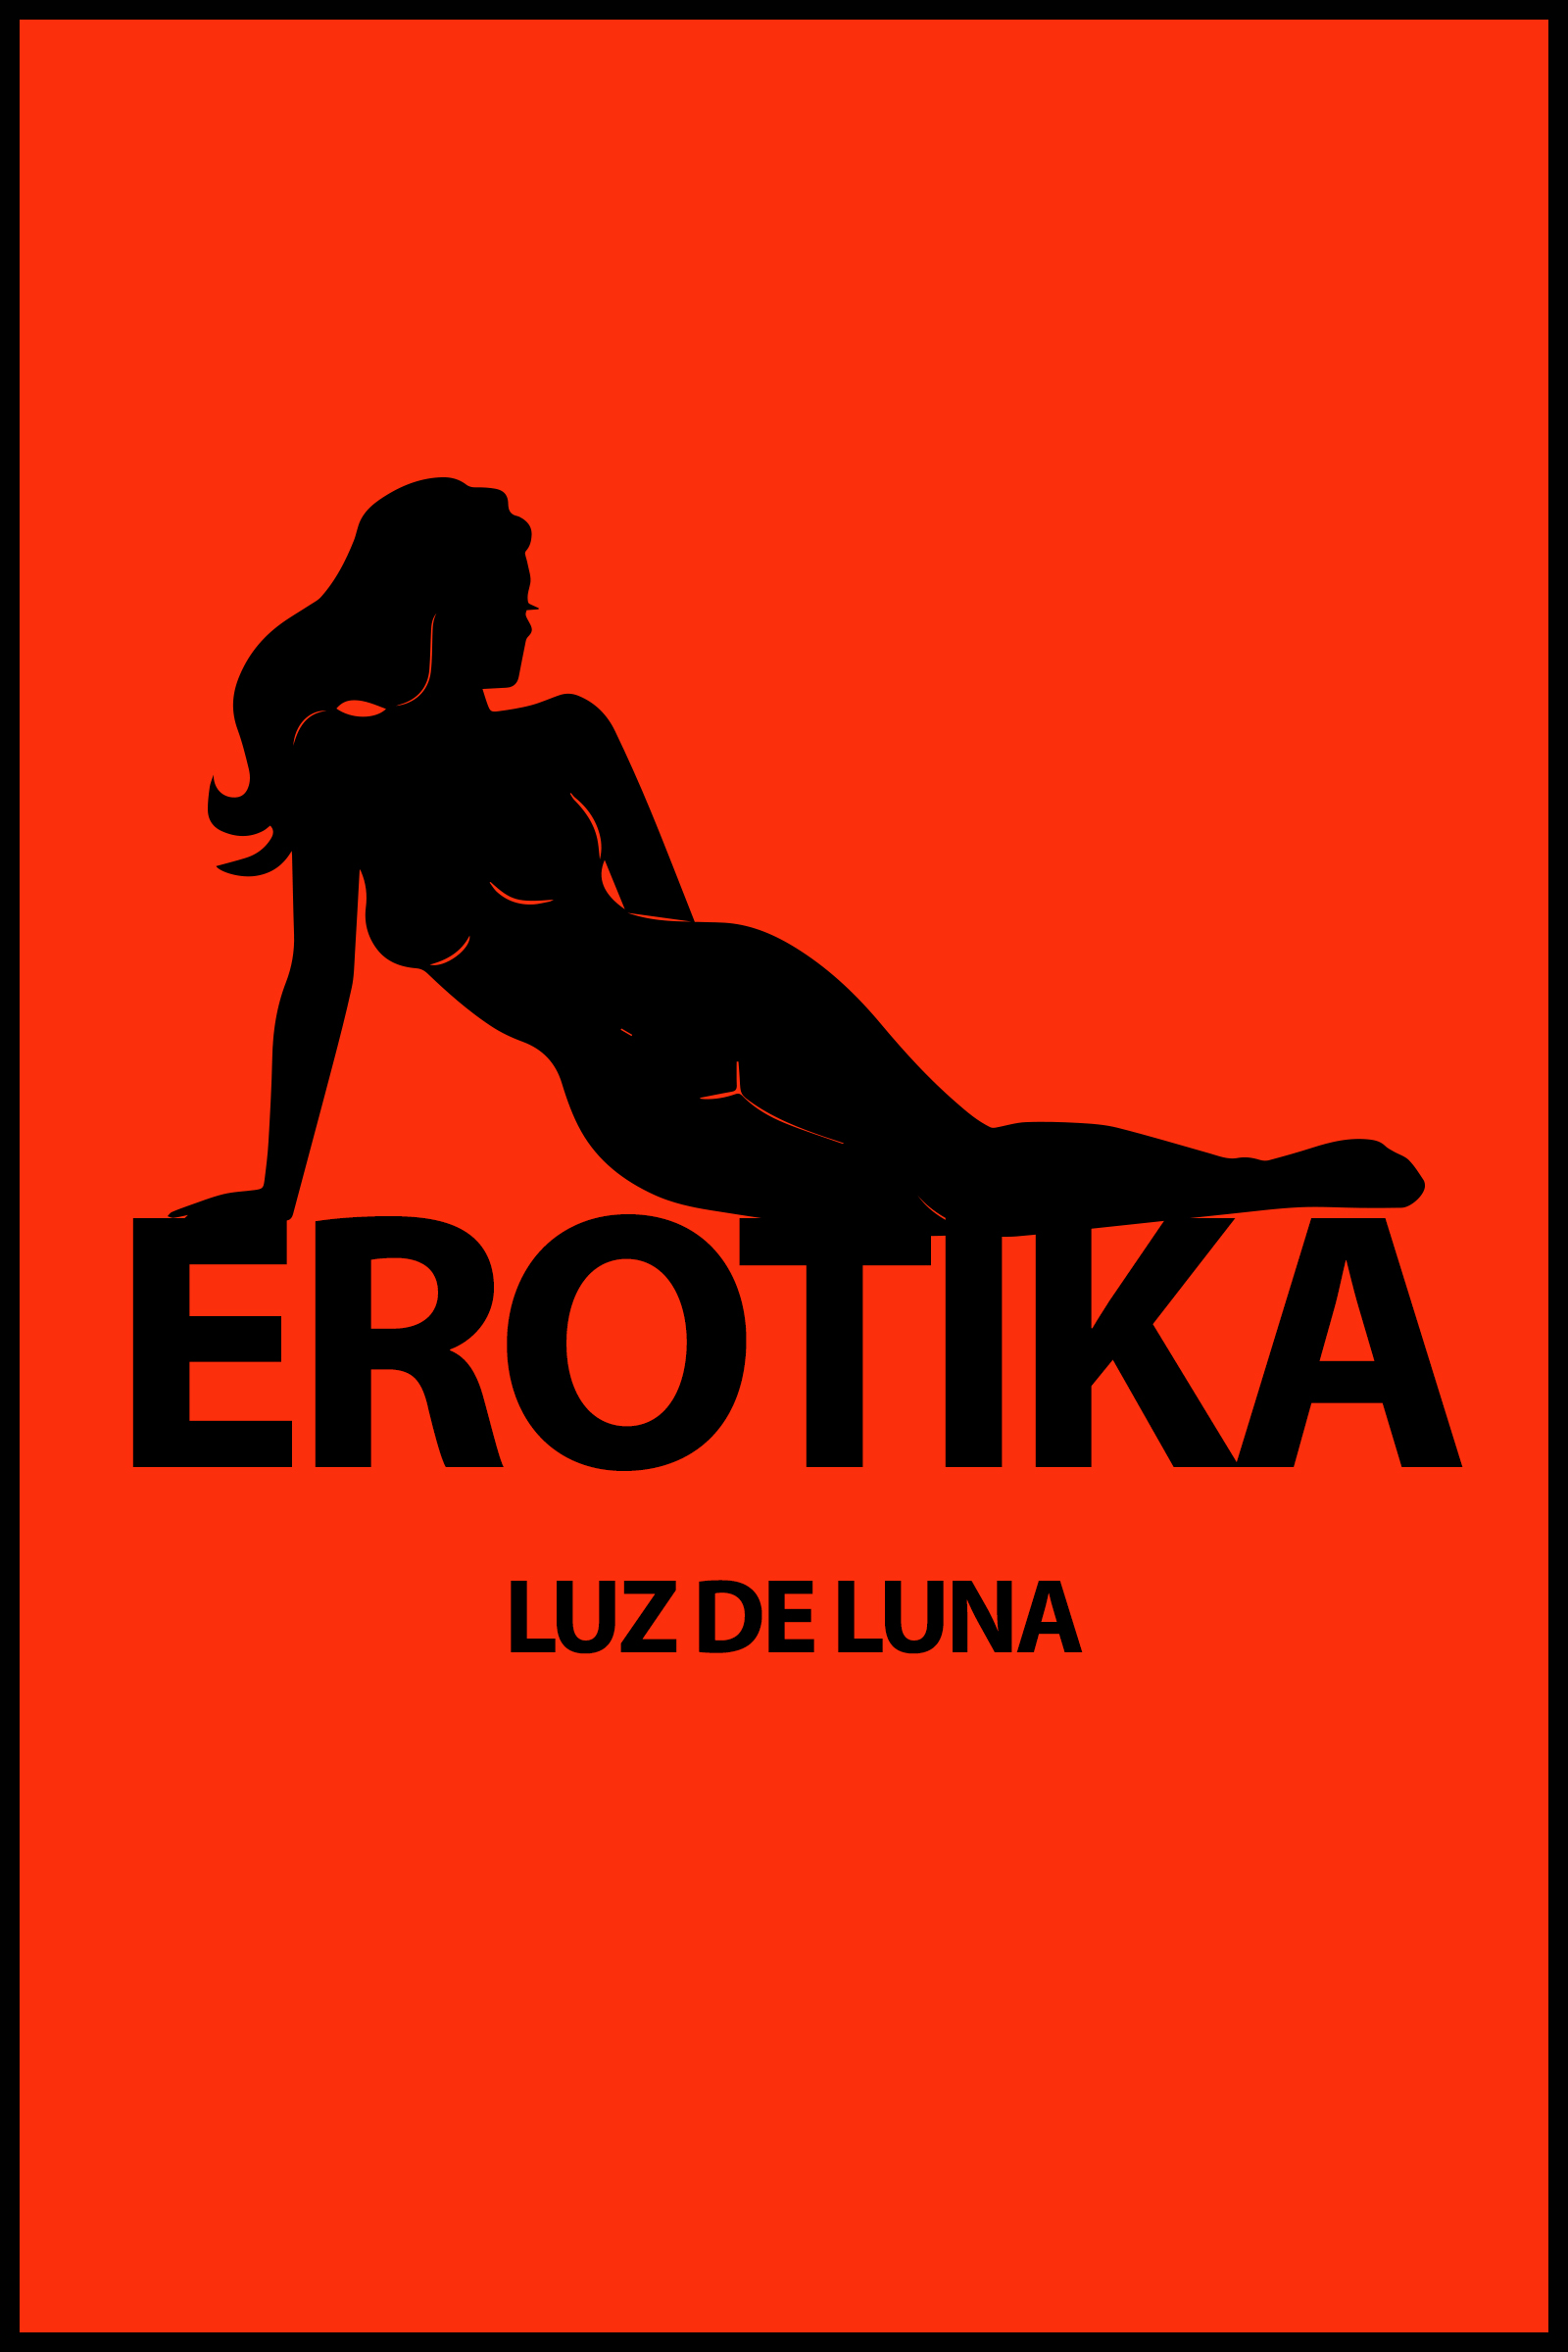 brandi medina recommends Erotika Luz De Luna